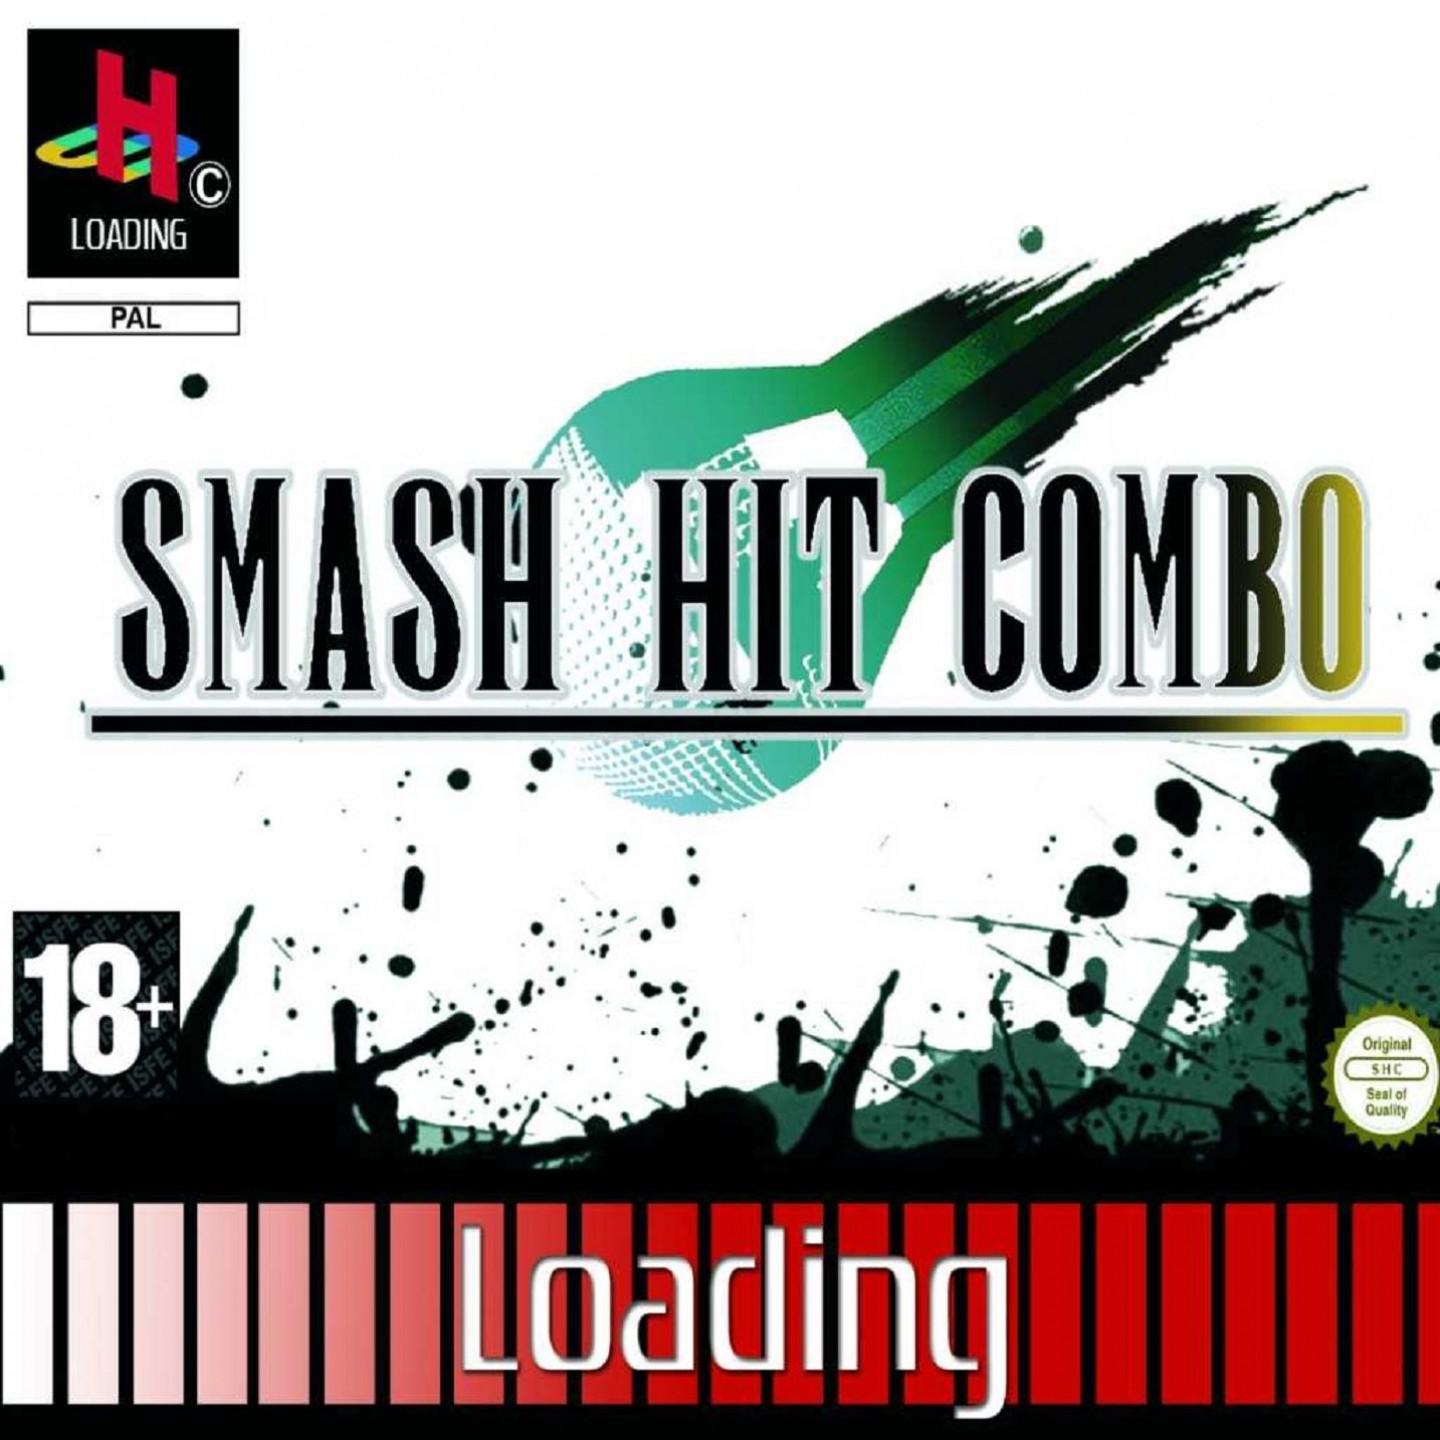 Smash Hit Combo - Trop vite